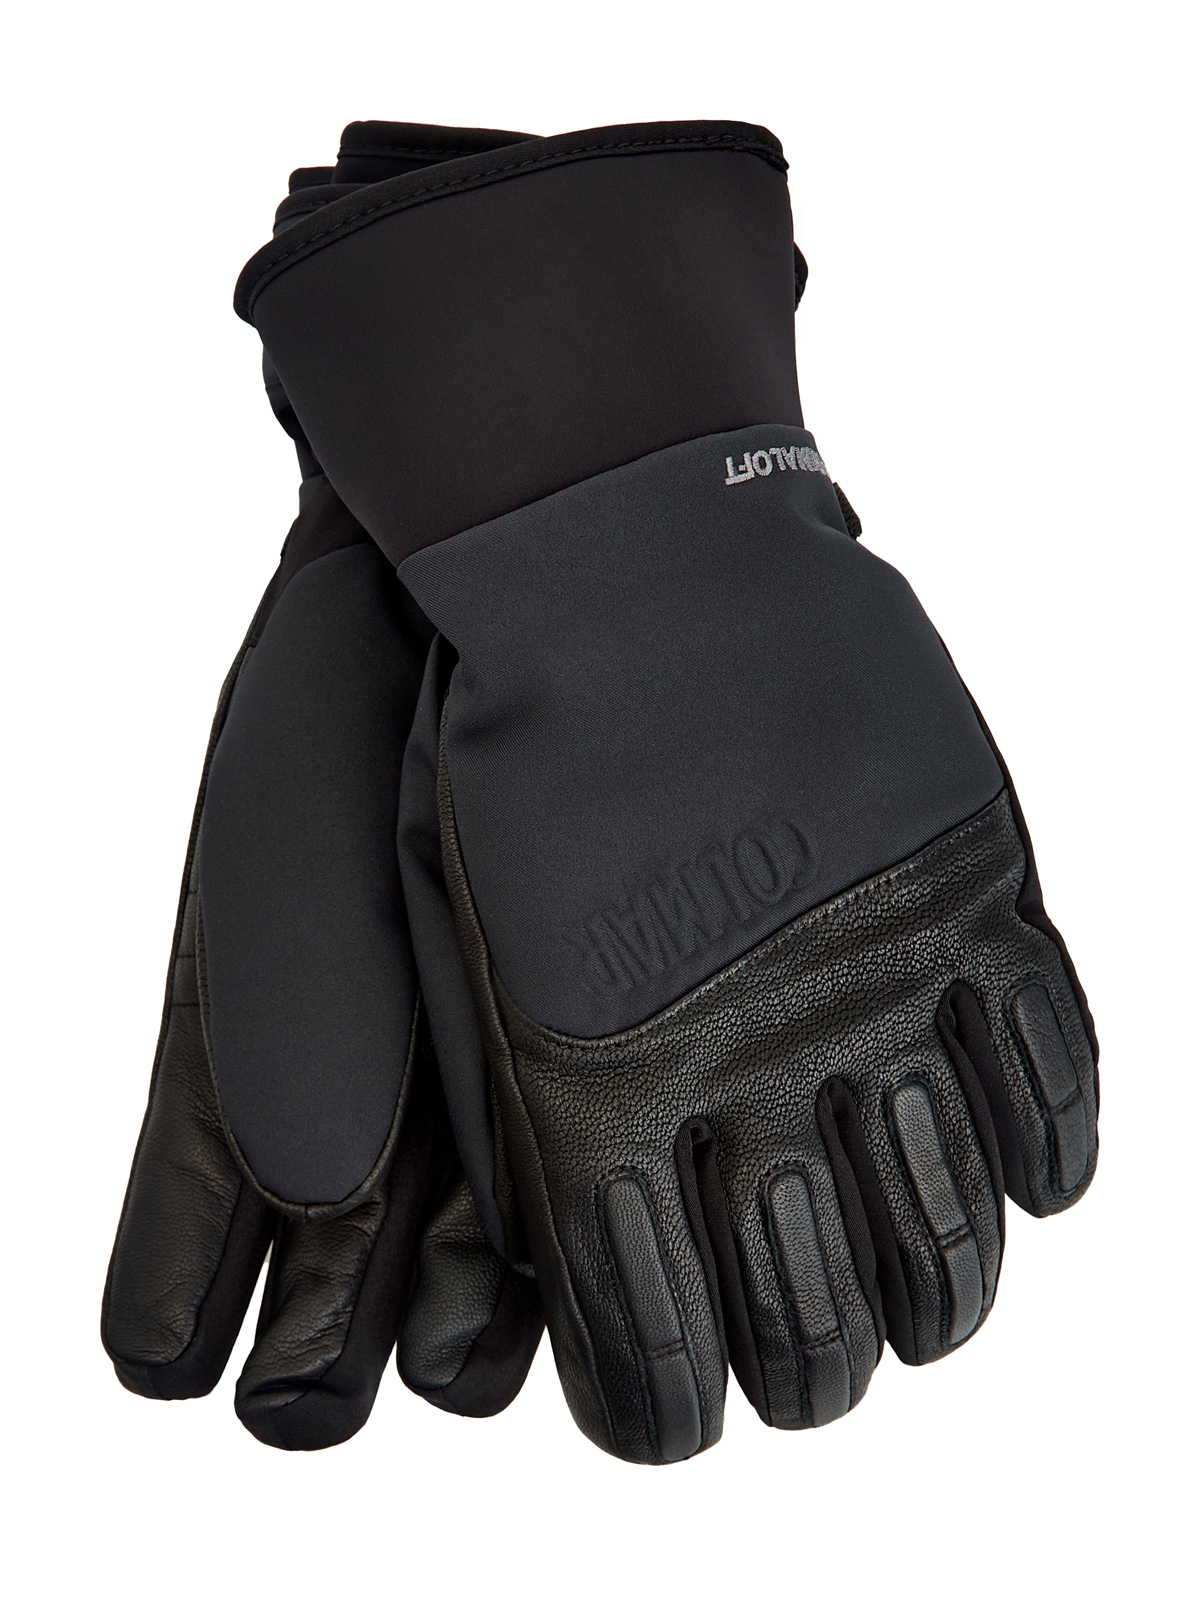 Горнолыжные перчатки из кожи и мембраны с подкладкой PrimaLoft®